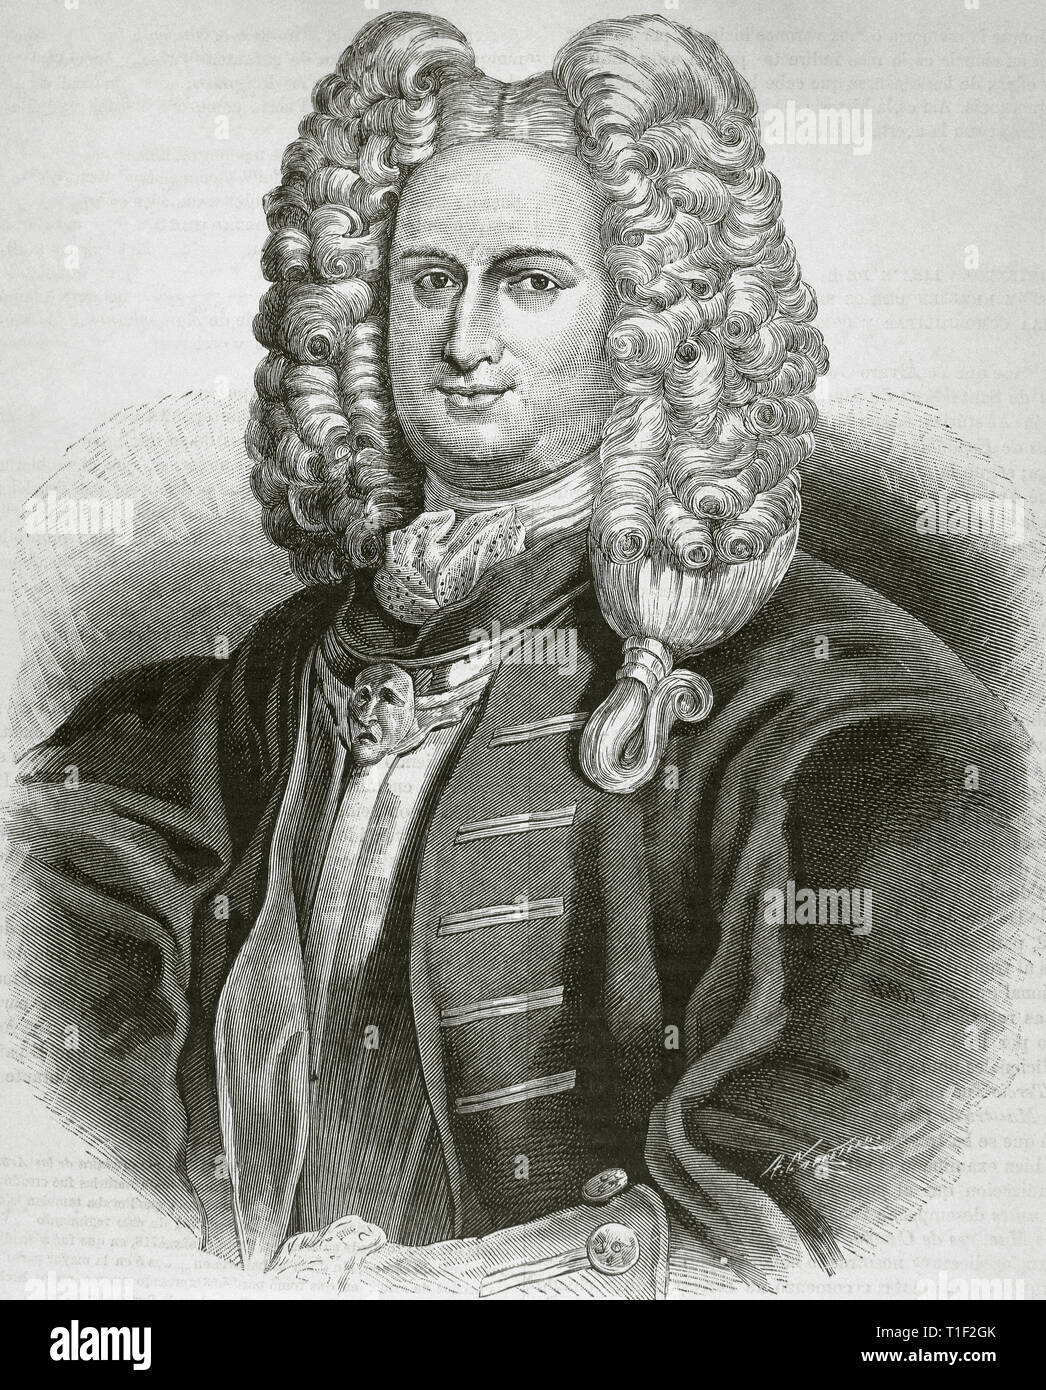 Alvaro de Navia Osorio Vigil (1684-1732). Spanish military and writer. Governor of Oran. Engraving, 1886. Stock Photo